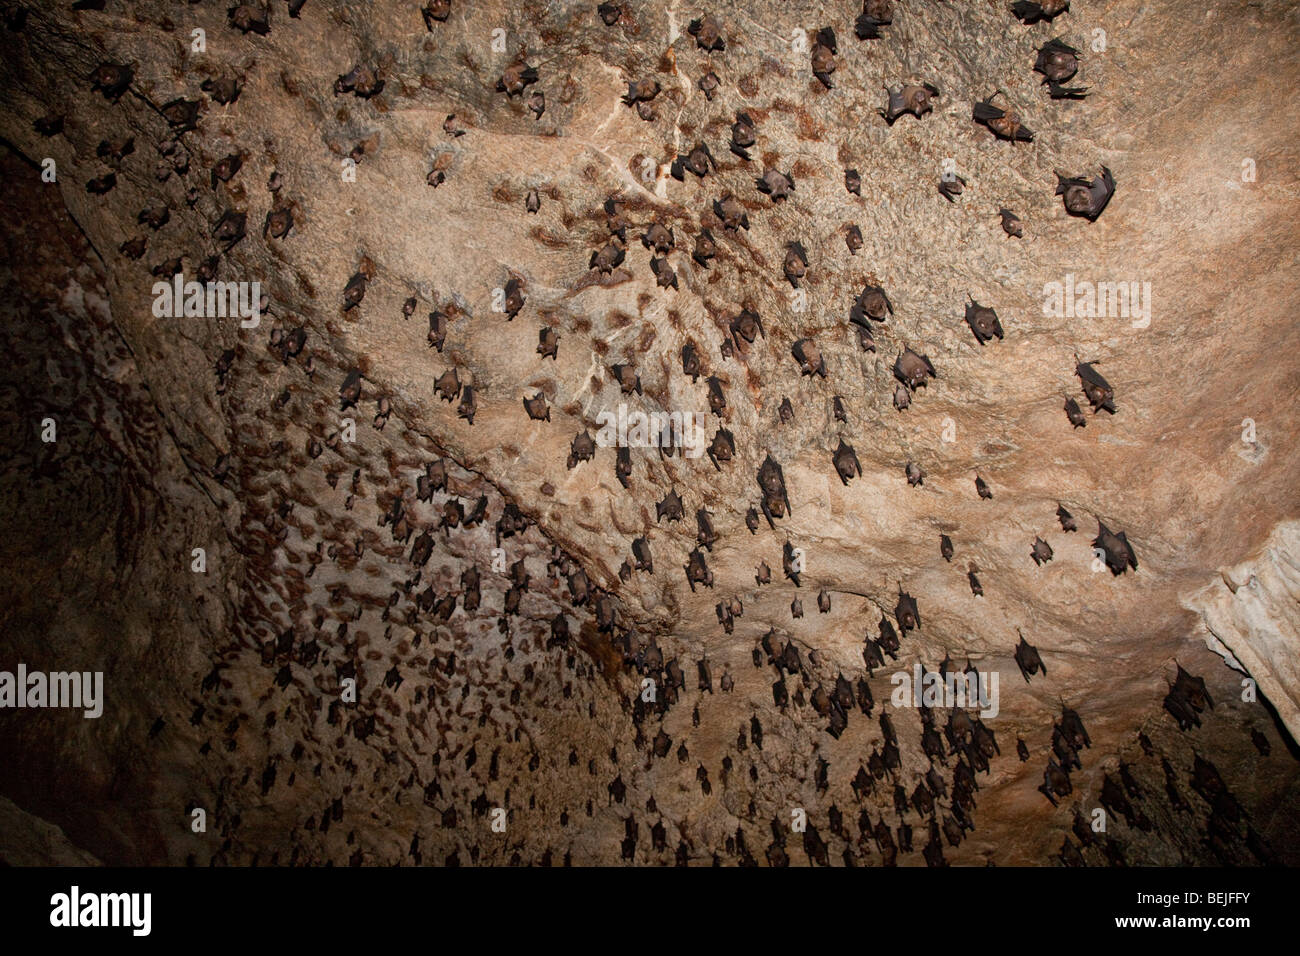 Los murciélagos frugívoros de Malasia (aprox. cuatro especies diferentes) posados en Gua Kelawar cueva Pulau Langkawi Malasia Foto de stock